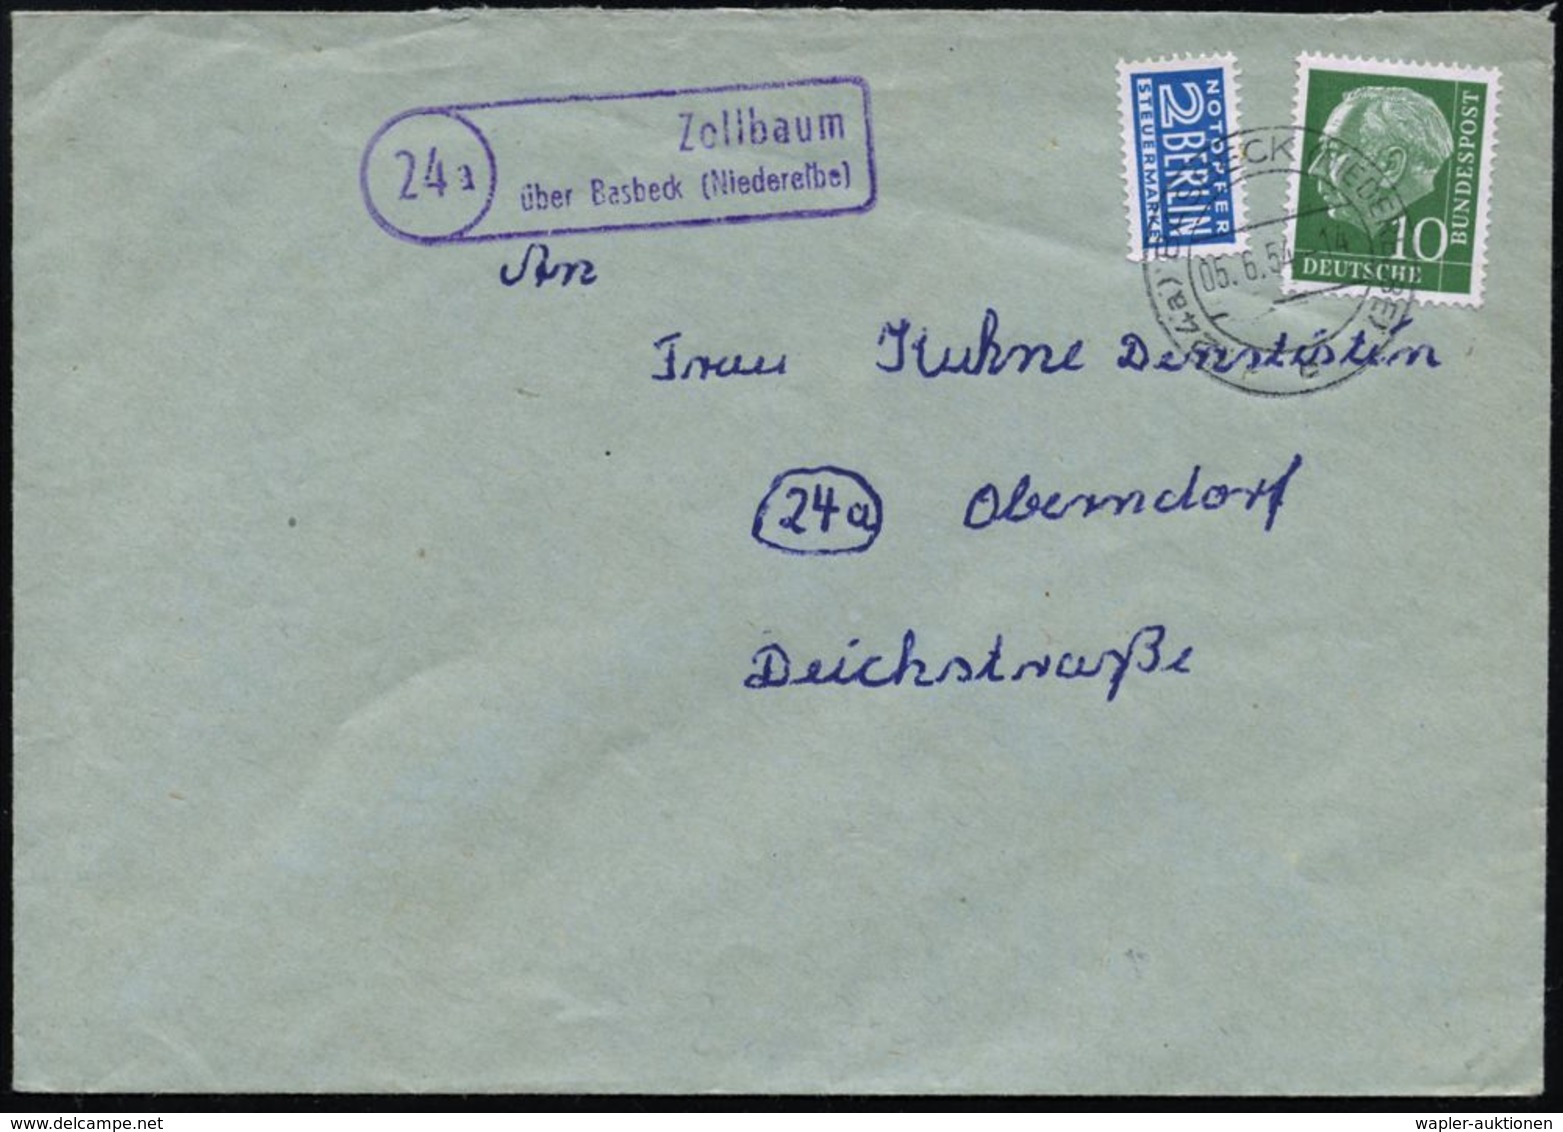 ZOLL / FISKUS / FINANZSYSTEME : (24a) Z O L L B A U M /  überBasbeck (Niederelbe) 1954 (5.6.) Viol. Ra.2 = PSt.II + 2K:  - Unclassified